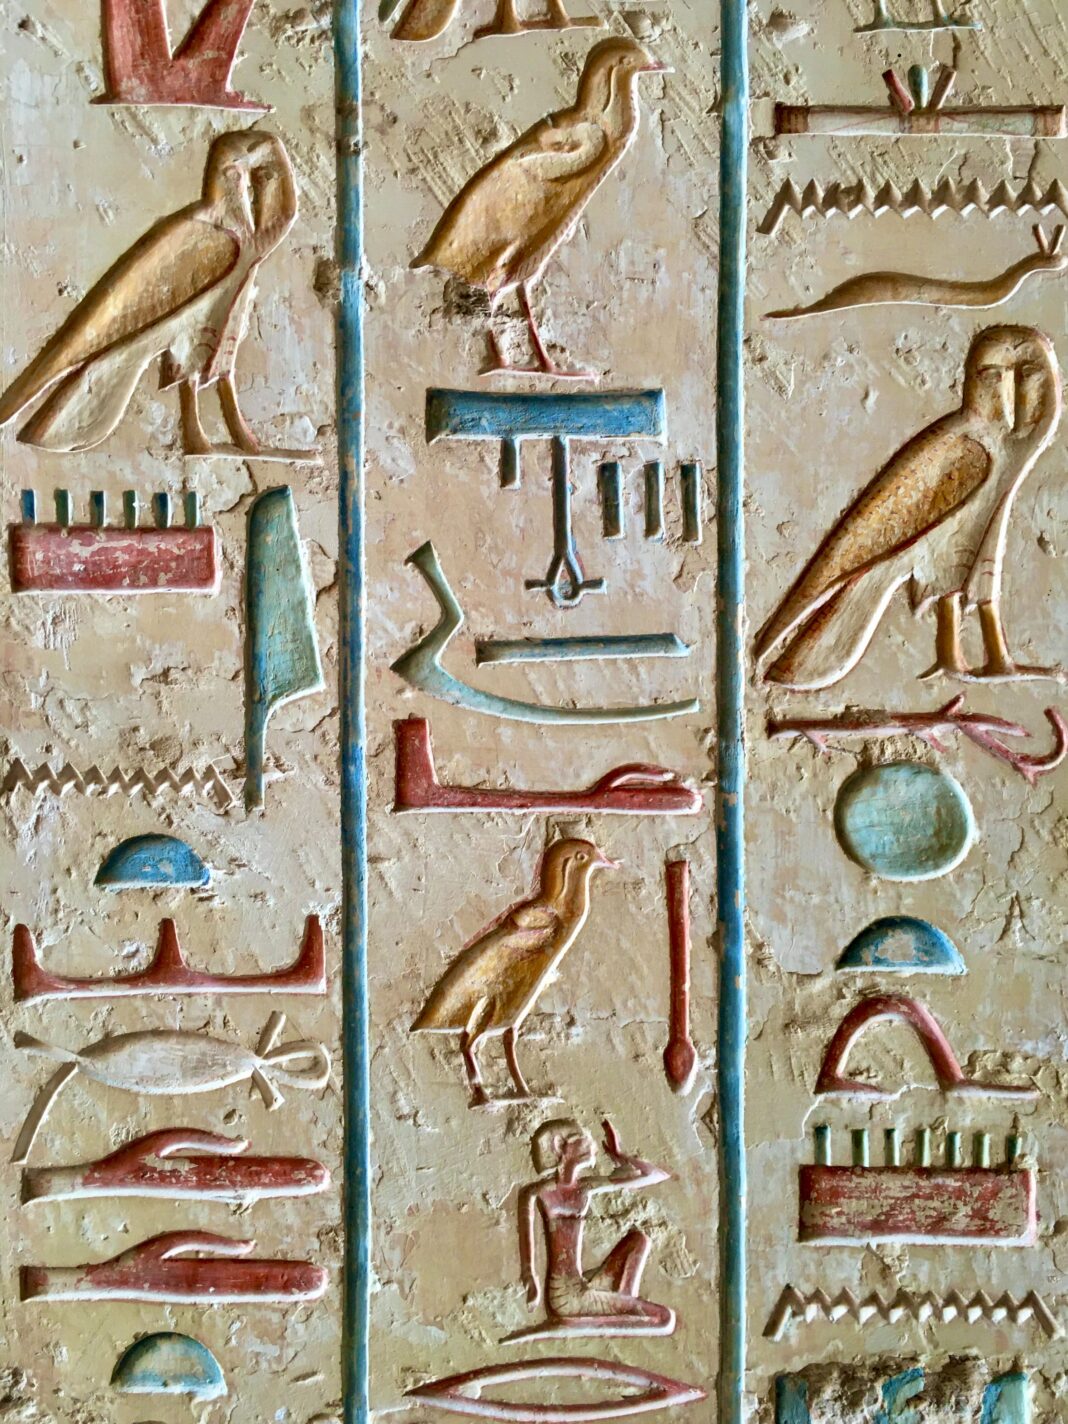 Des archéologues ont découvert la tombe d'un scribe royal près du Caire